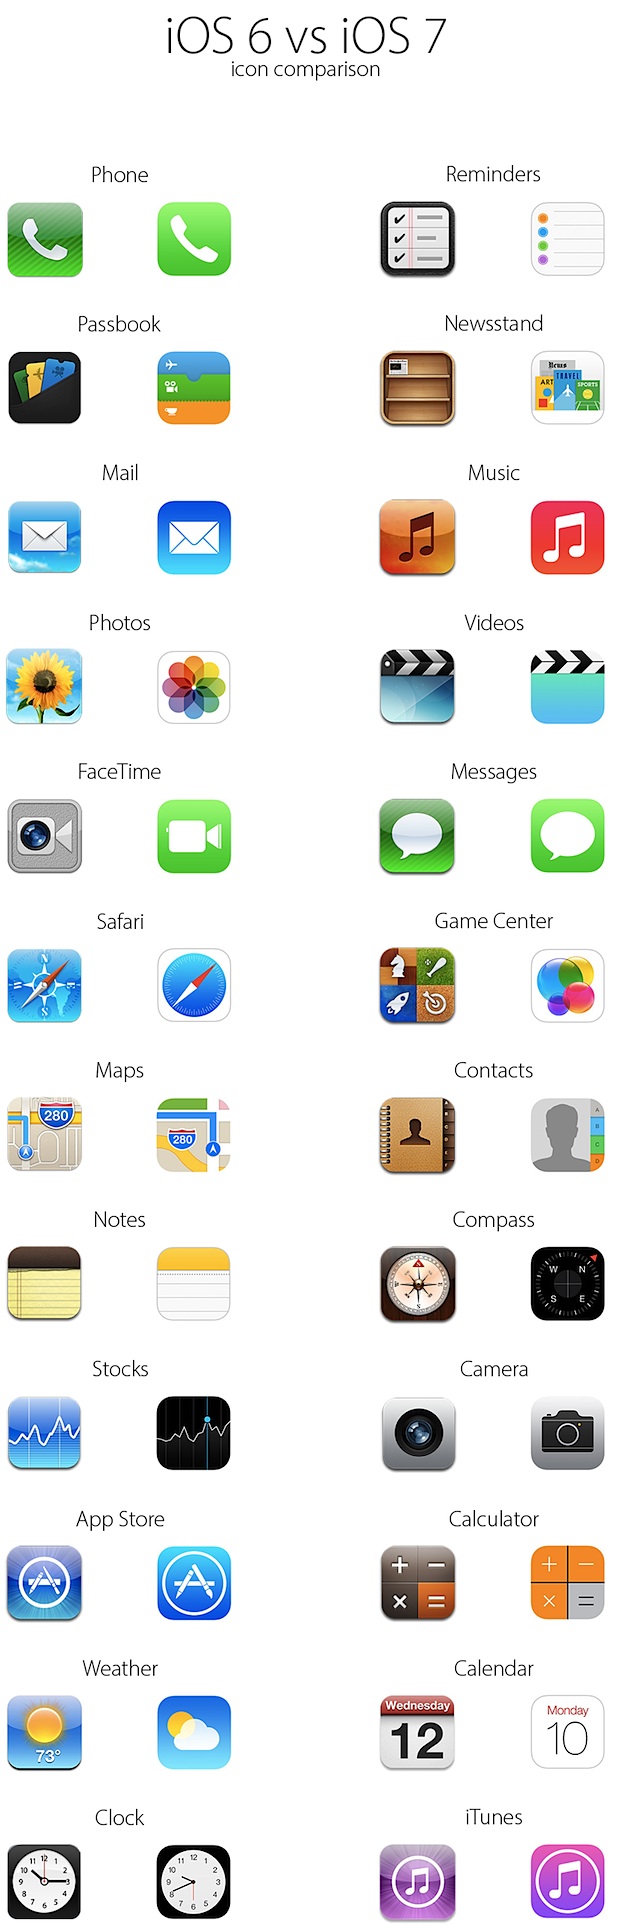 Iconos de iOS 7 versus iconos de iOS 6